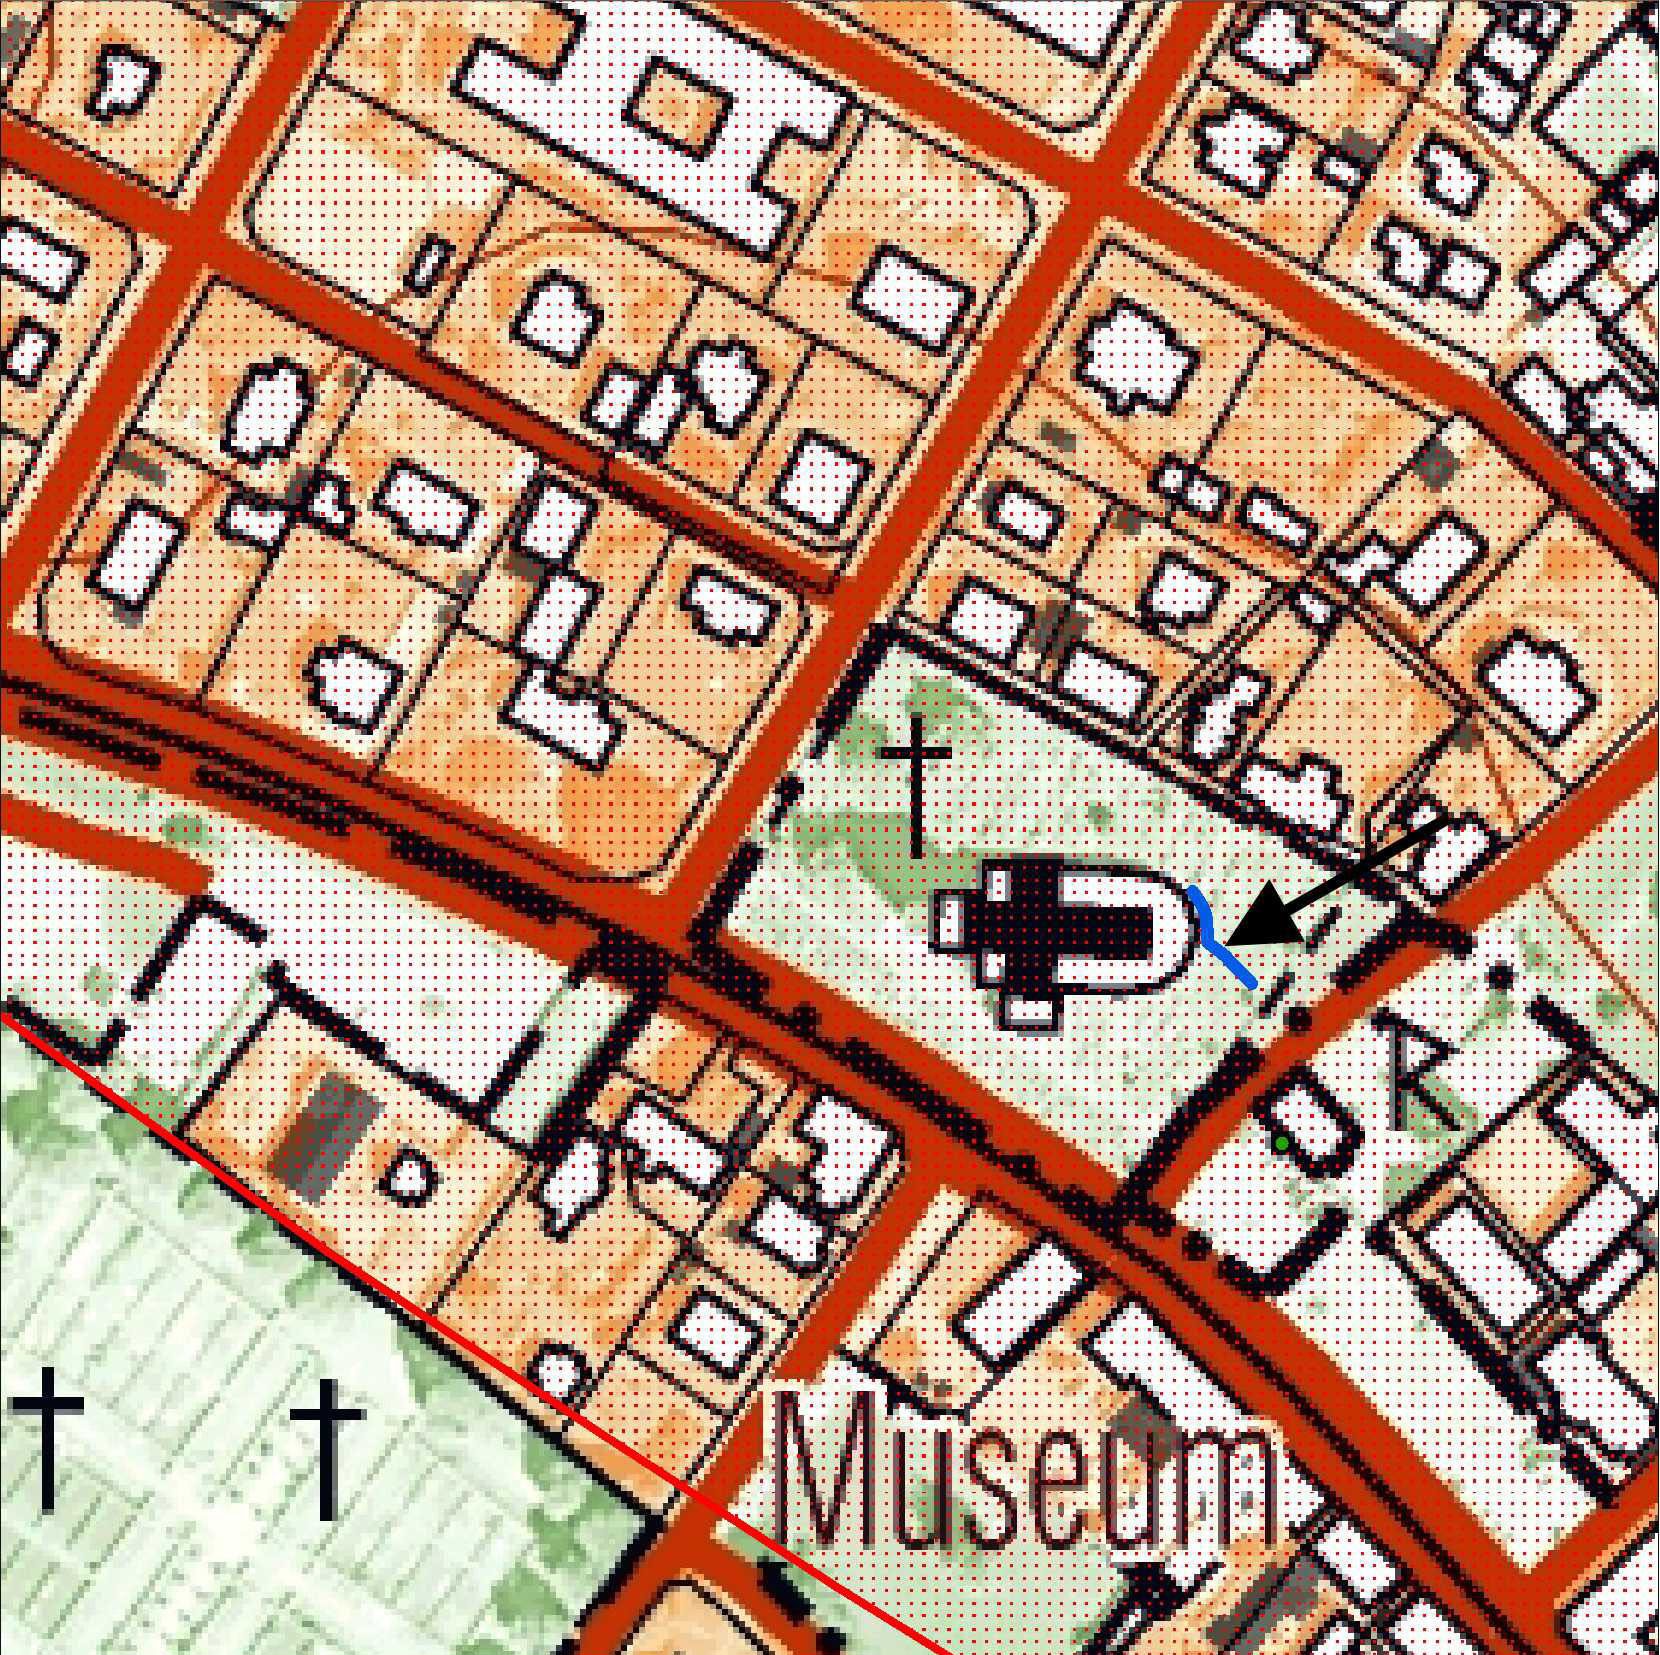 Fig. 4. Utdrag ur Fastighetskartan med det schakt som schaktningsövervakades markerat med blått. RAÄ 24, Båstads medeltida stadslager, är markerat med rött raster. Skala 1:2000.